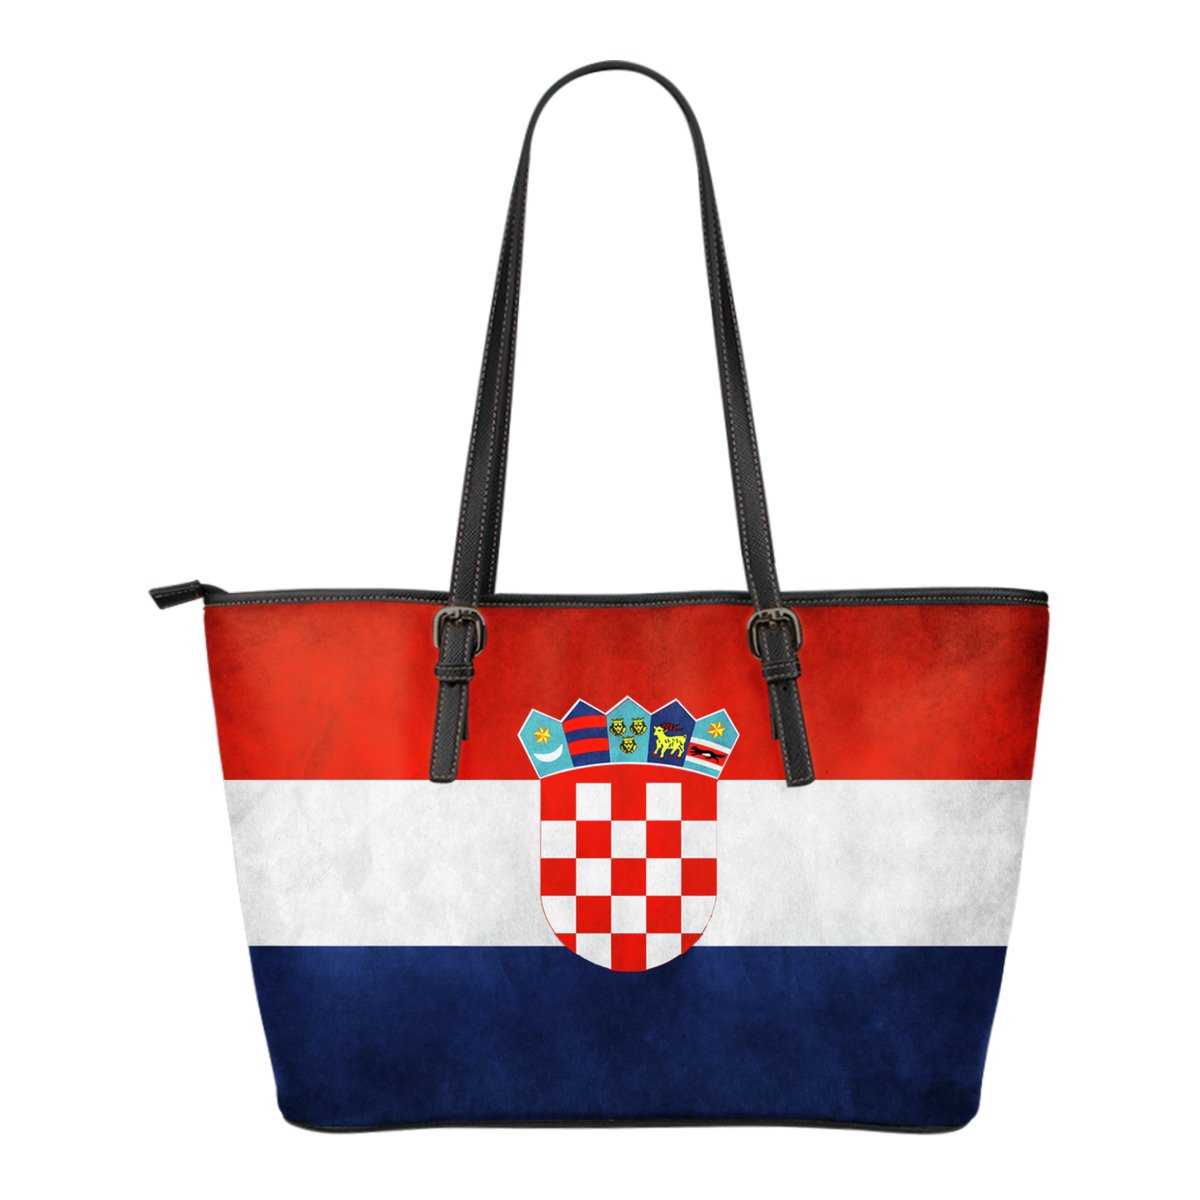 croatia-bag-croatia-flag-leather-tote-small